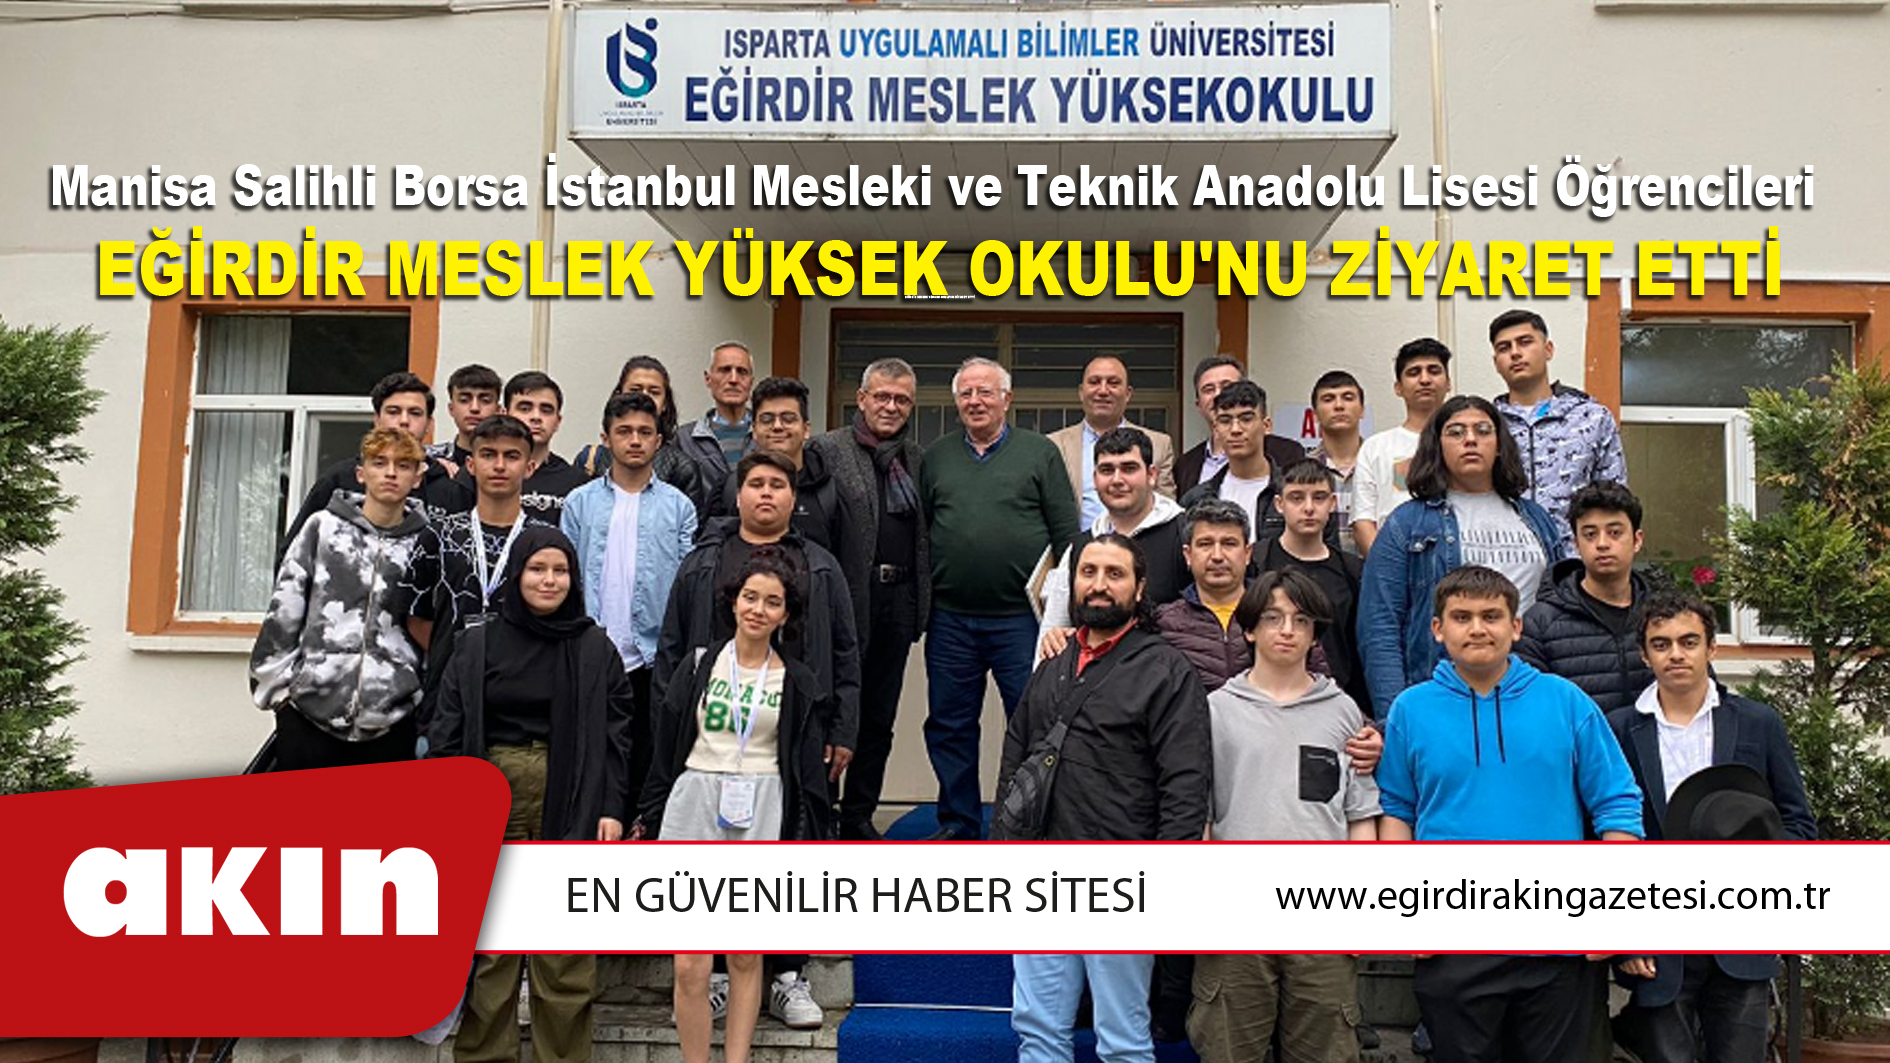 Manisa Salihli Borsa İstanbul Mesleki ve Teknik Anadolu Lisesi Öğrencileri  Eğirdir Meslek Yüksek Okulu'nu Ziyaret Etti